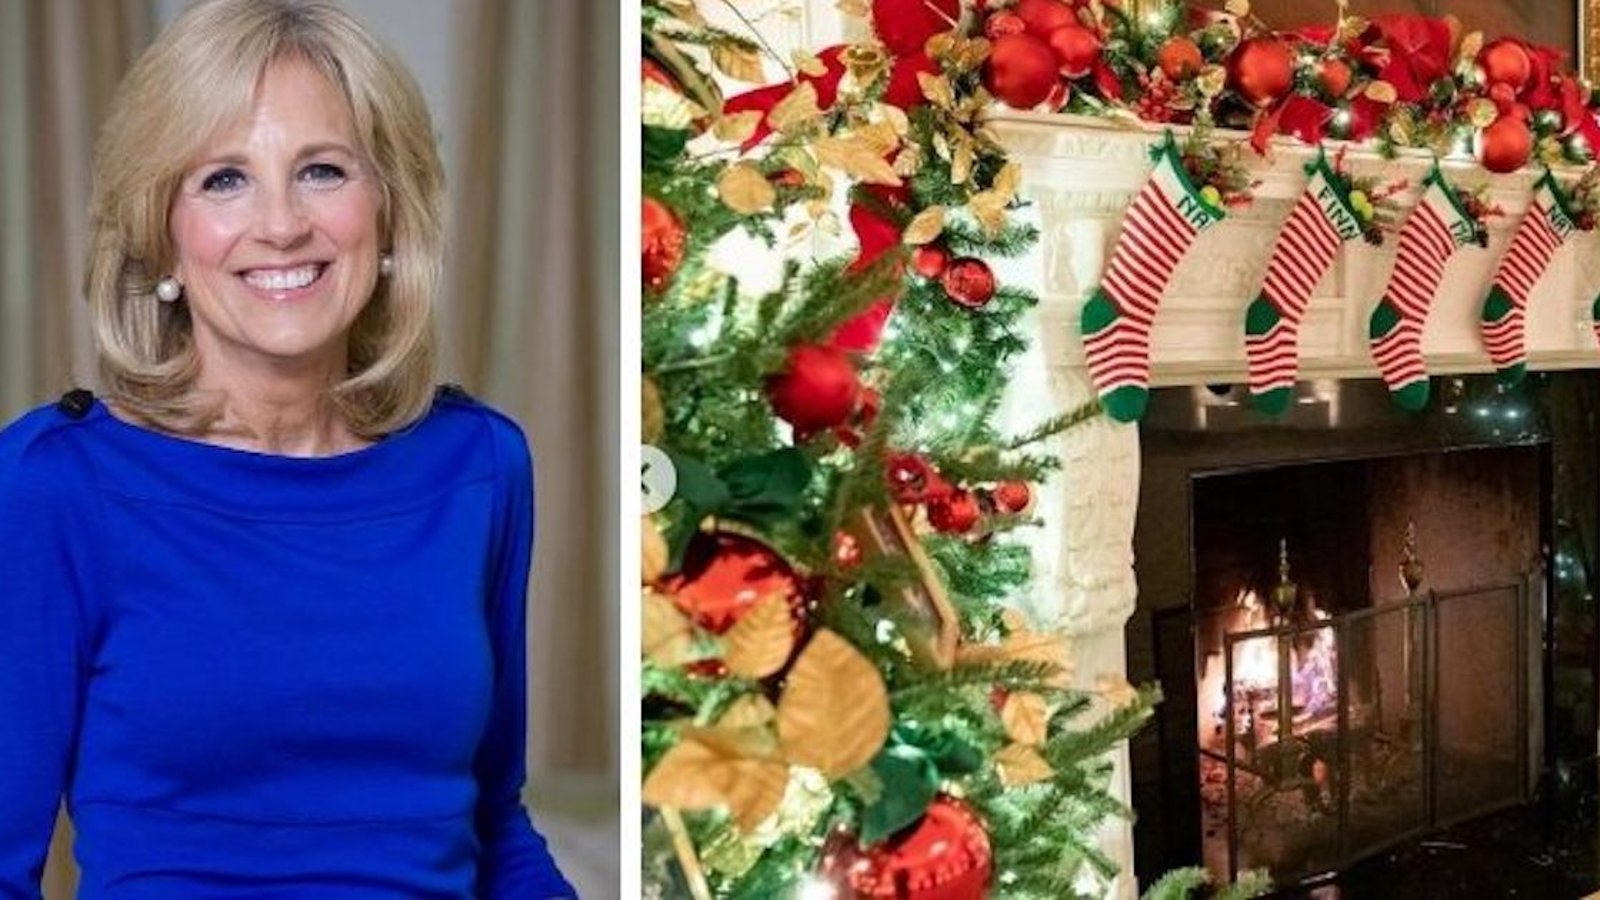 Voici un aperçu des décorations de Noël à la Maison Blanche cette année